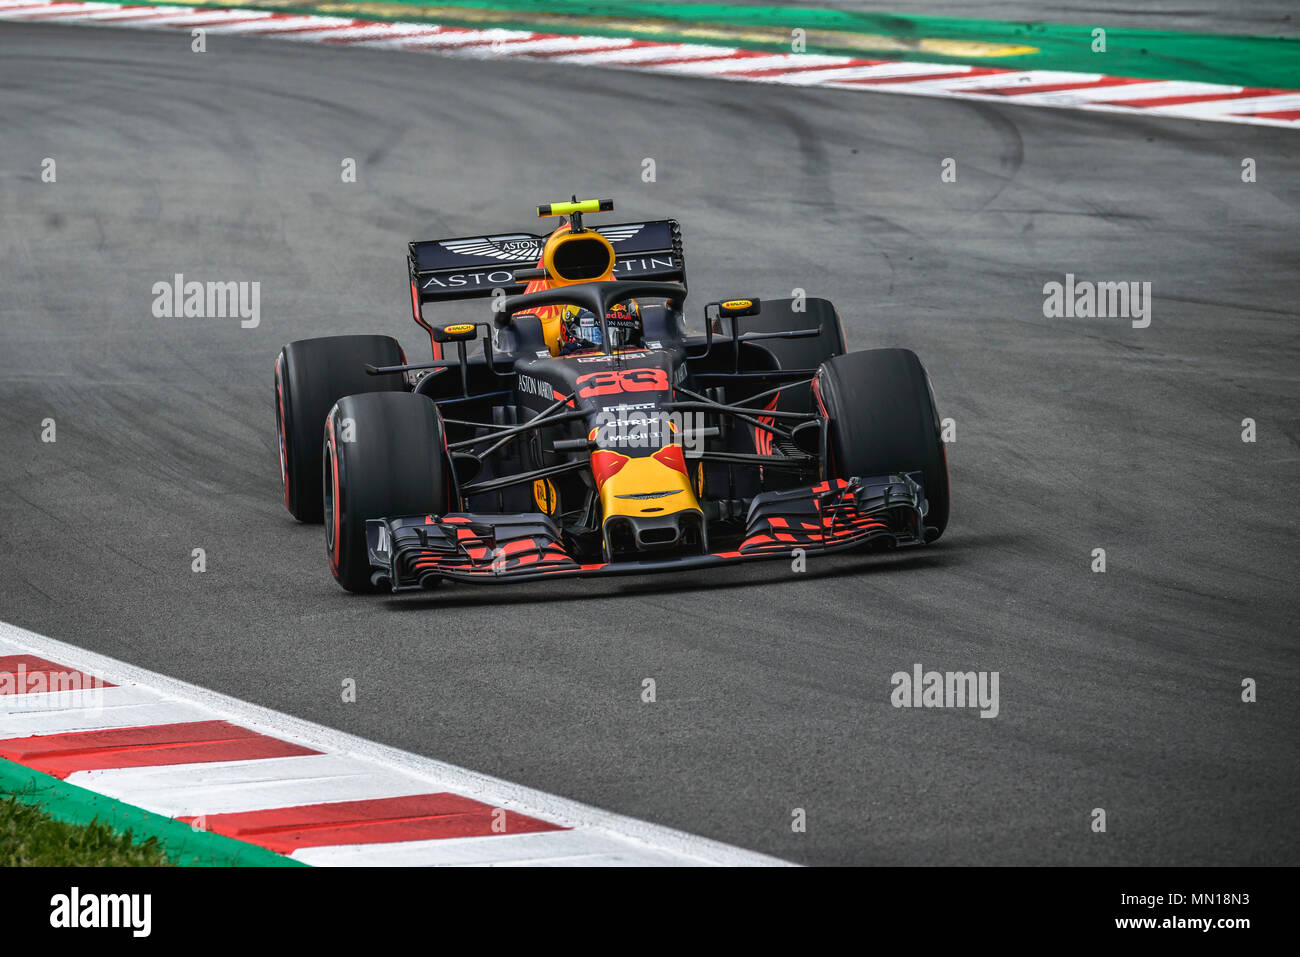 Barcellona, Spagna. 13 Maggio 2018: Max Verstappen (NED) aziona durante il GP di Spagna presso il Circuito de Barcelona - Catalunya con la sua Red Bull RB14 Credito: Matthias Oesterle/Alamy Live News Foto Stock